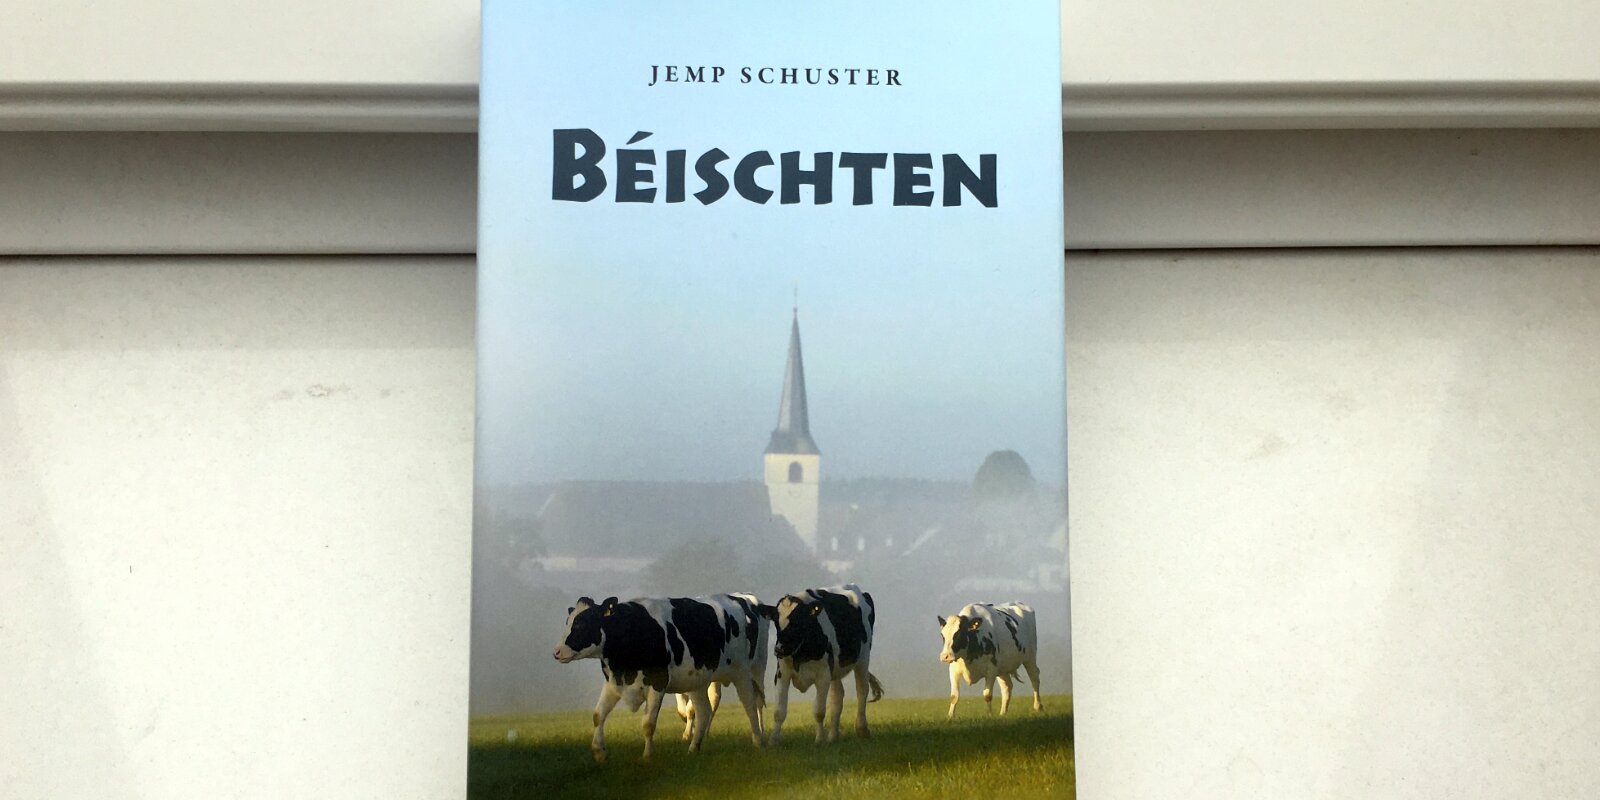 Buchkritik: Jhemp Schuster - "Béischten"